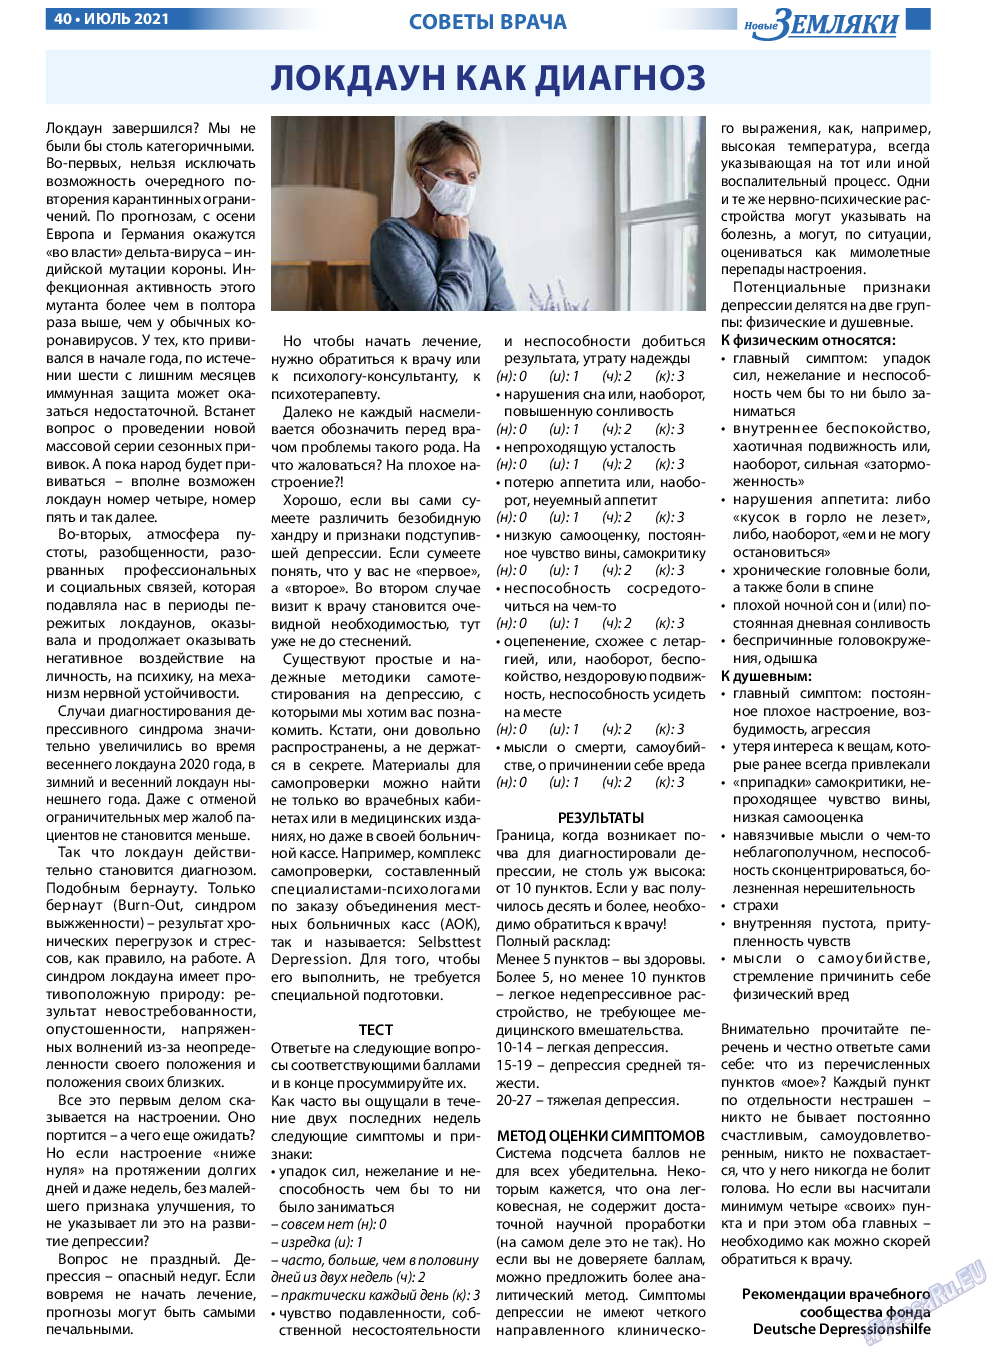 Новые Земляки, газета. 2021 №7 стр.40